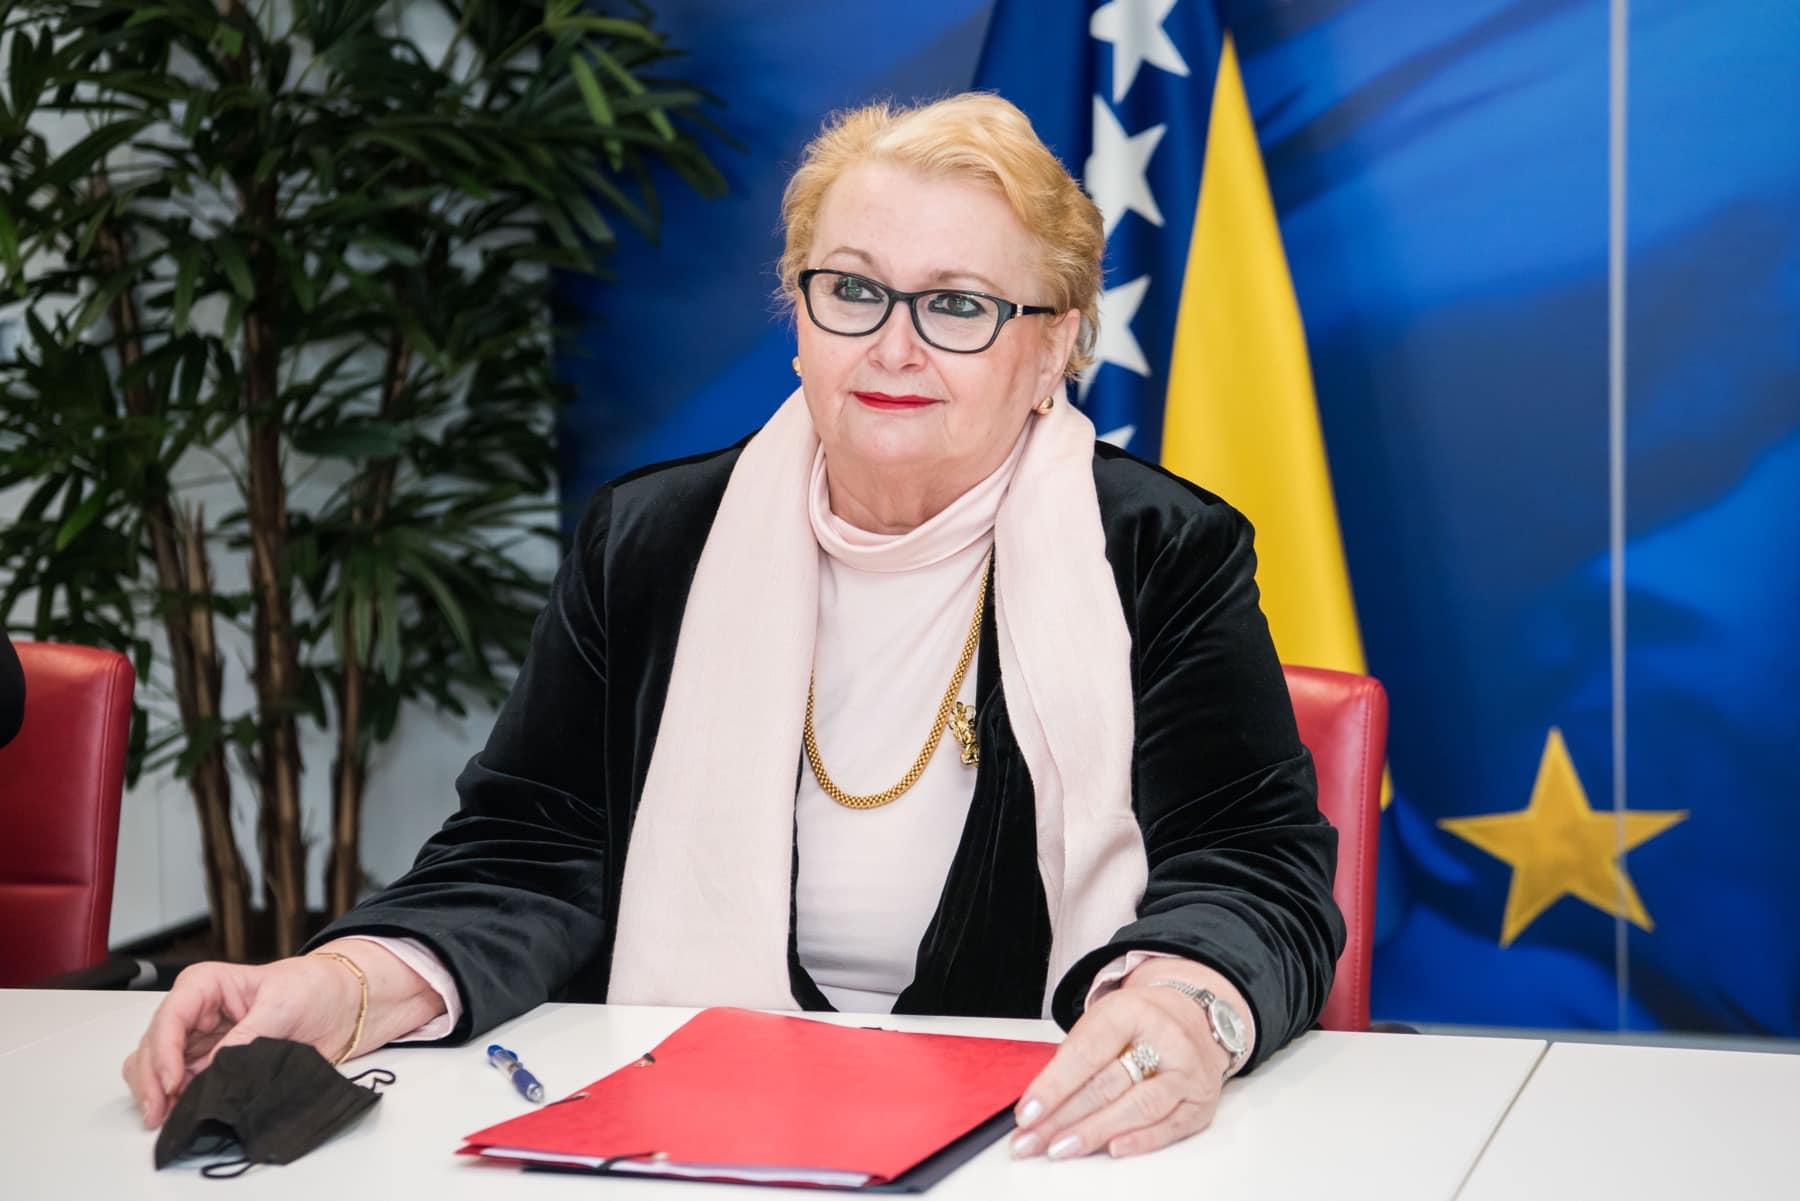 Turković uputila poziv svim bh. konzularnim predstavništvima da dostojanstveno obilježe 1. mart